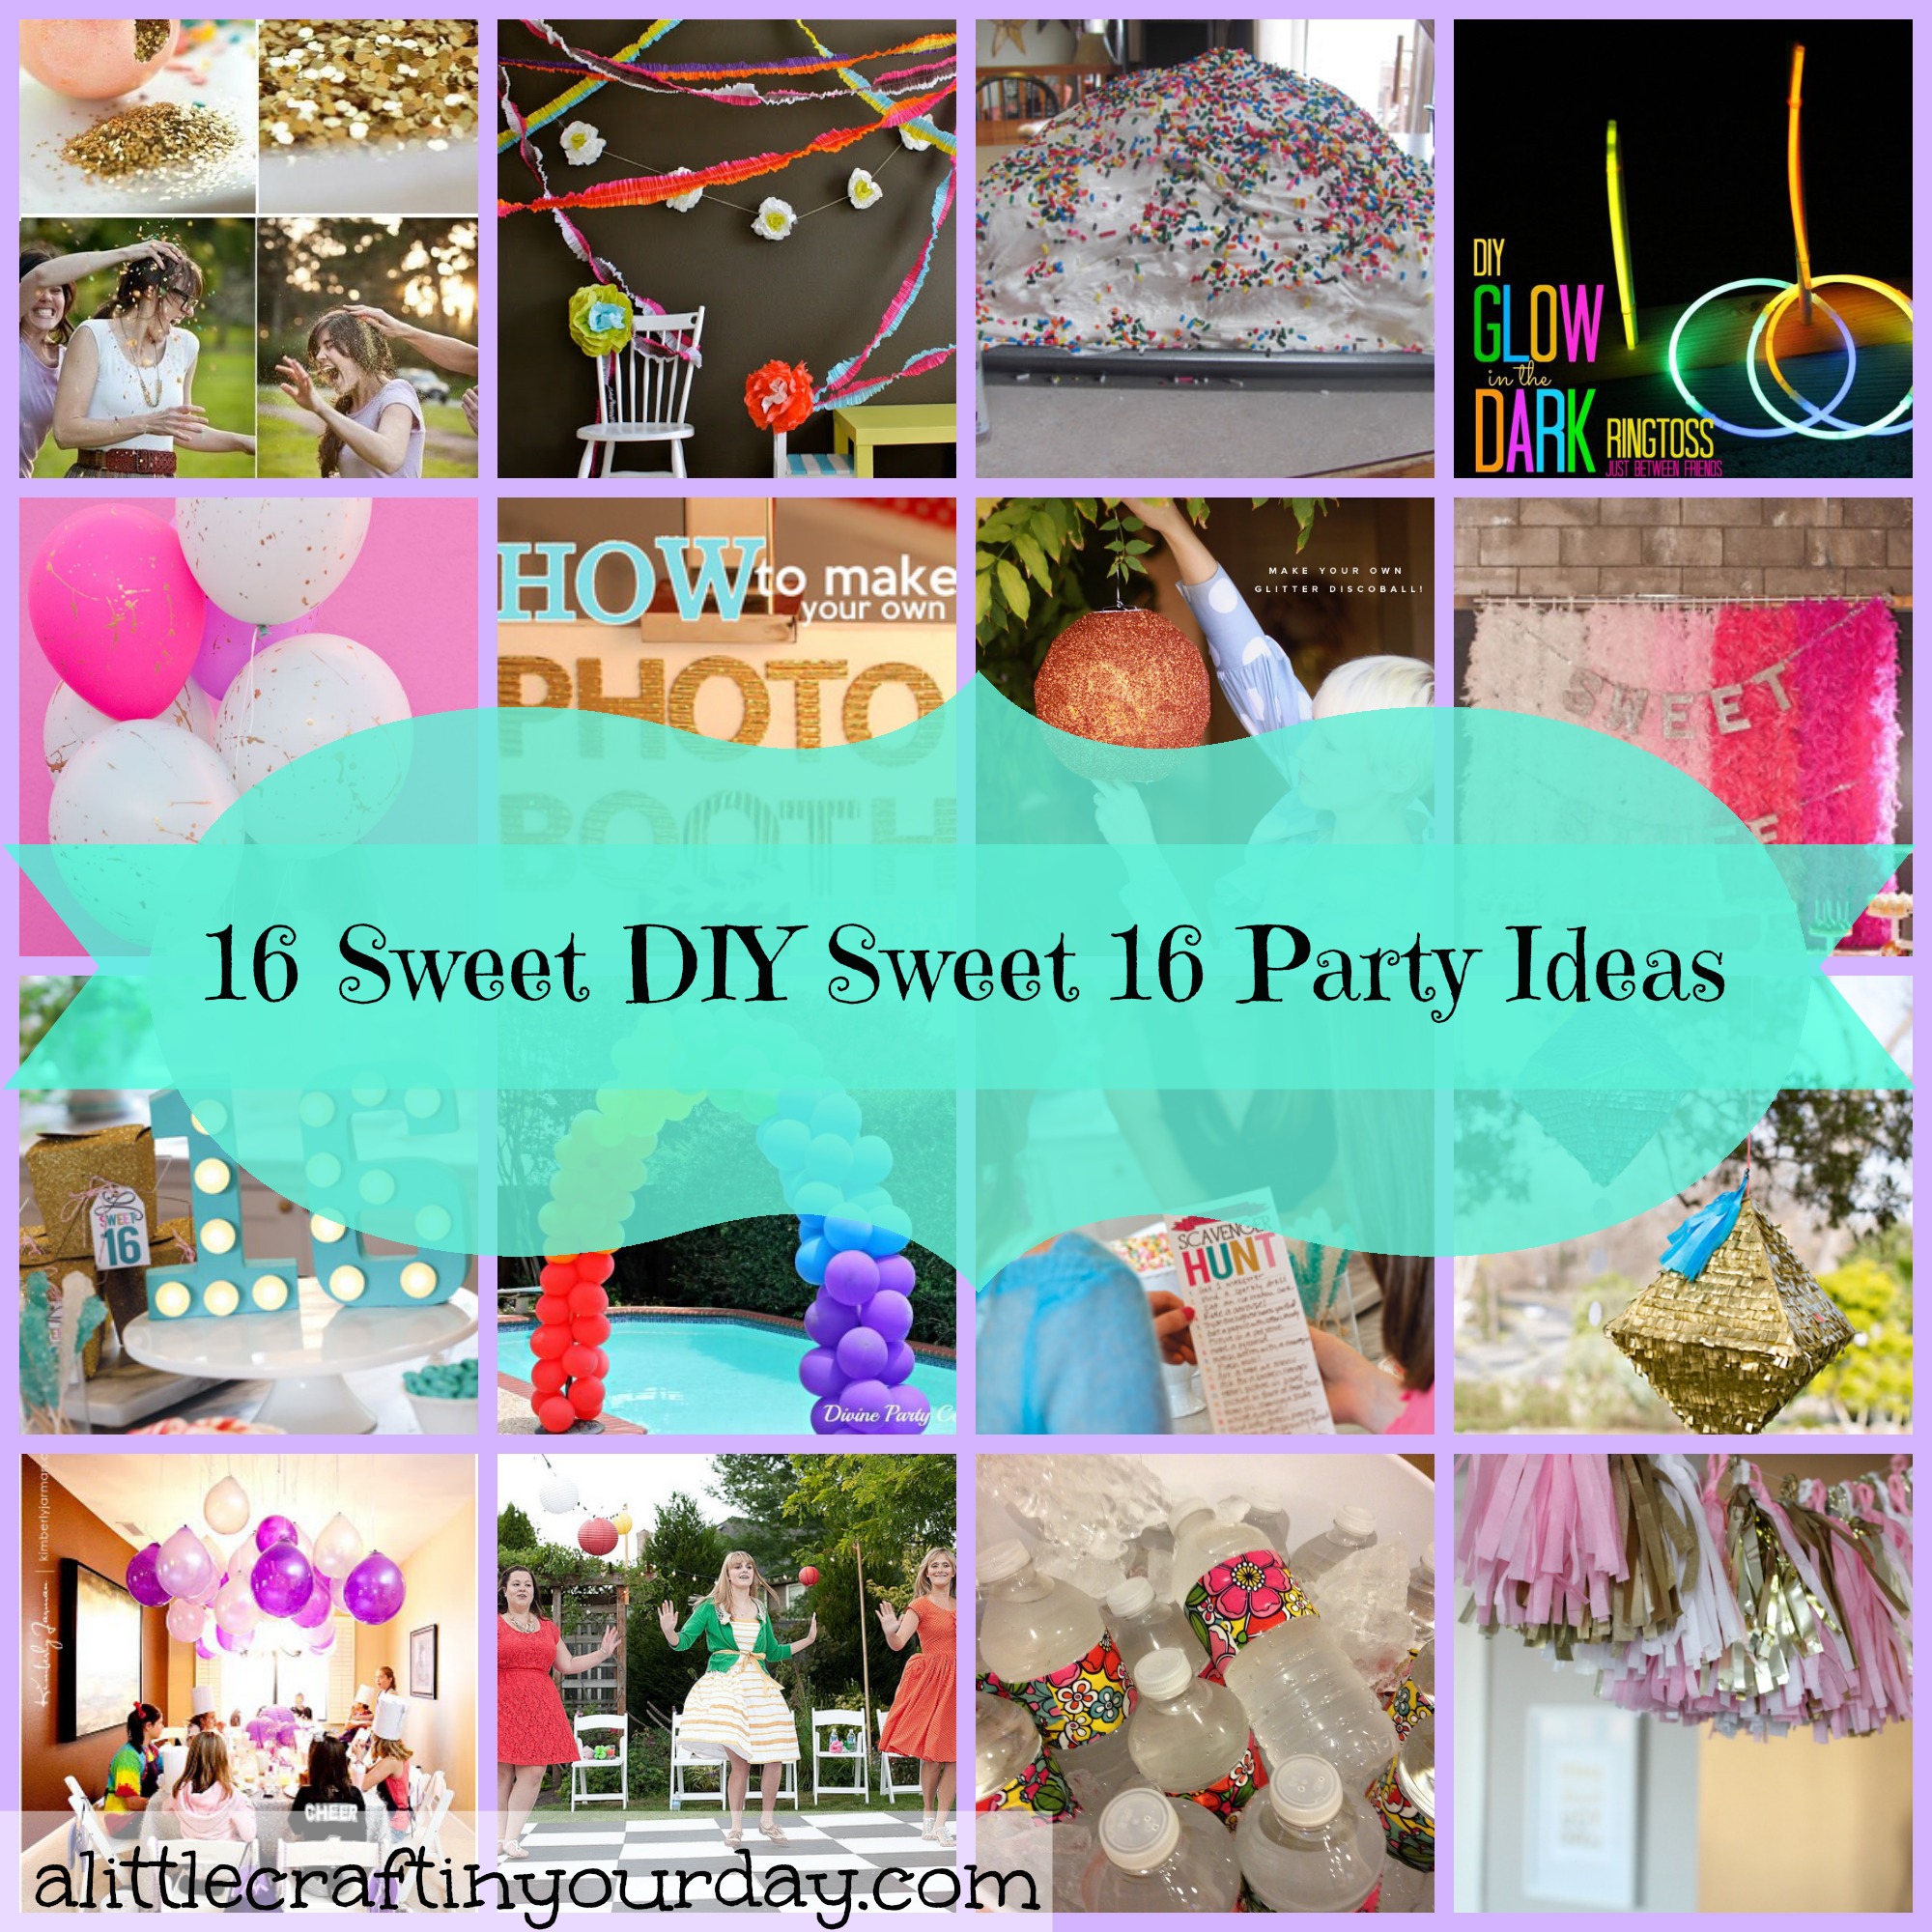 16_Sweet_DIY_Sweet_16_Party_Ideas